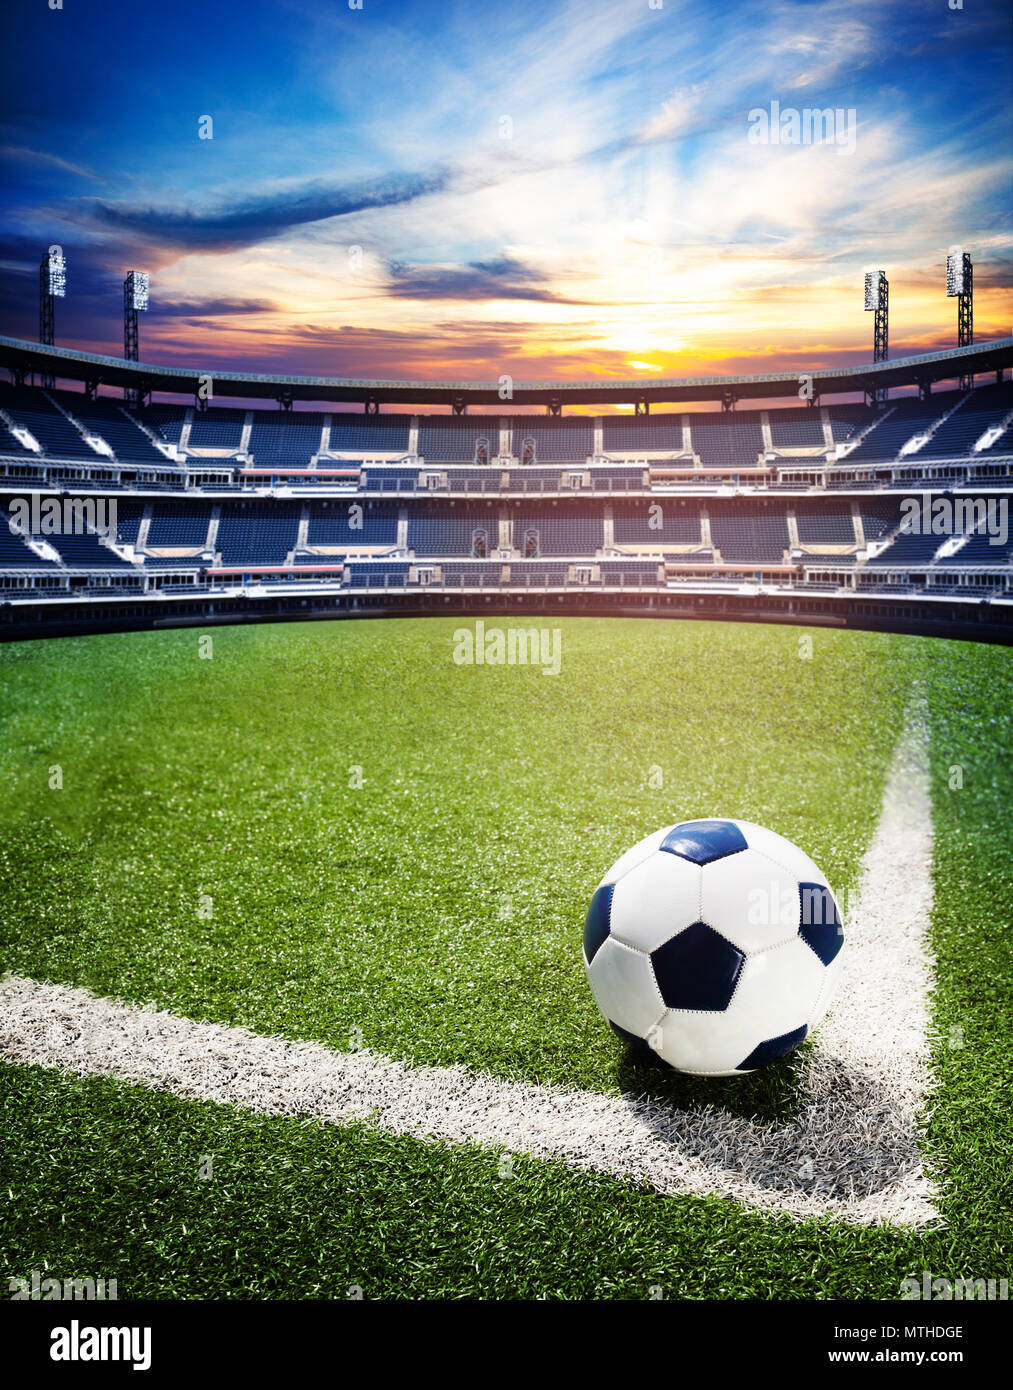 Konzept der Fußball wm oder nationale Meisterschaft Stadion Hintergrund mit Fußball-Ball auf dem großen Feld Stockfoto